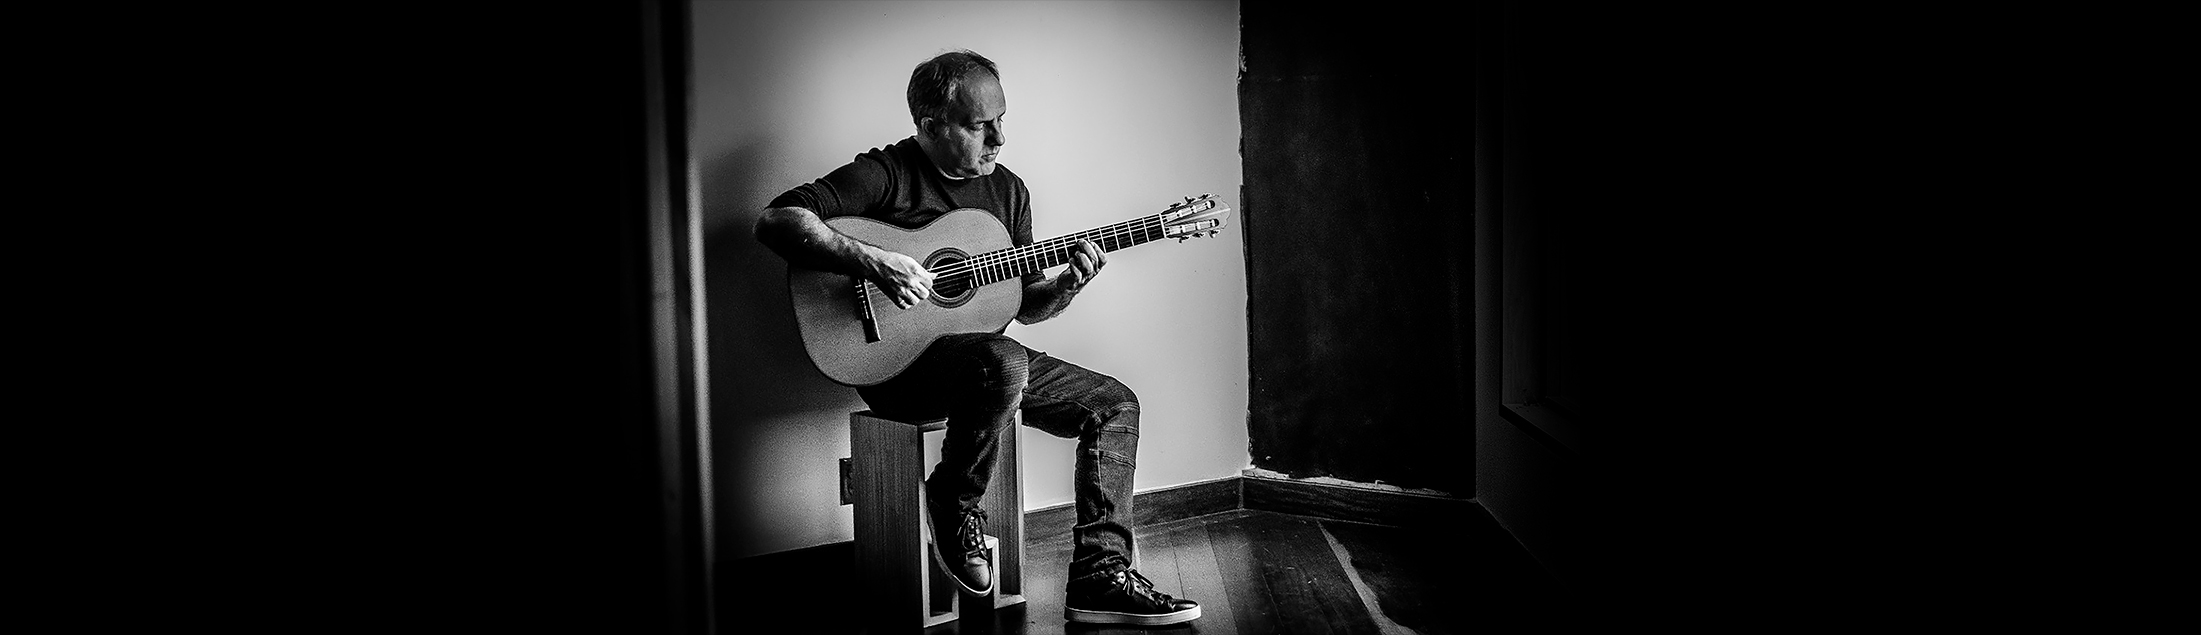 Guitarrista Torcuato Mariano lança 'Escola Brasileira', homenagem pelos 40 anos de carreira